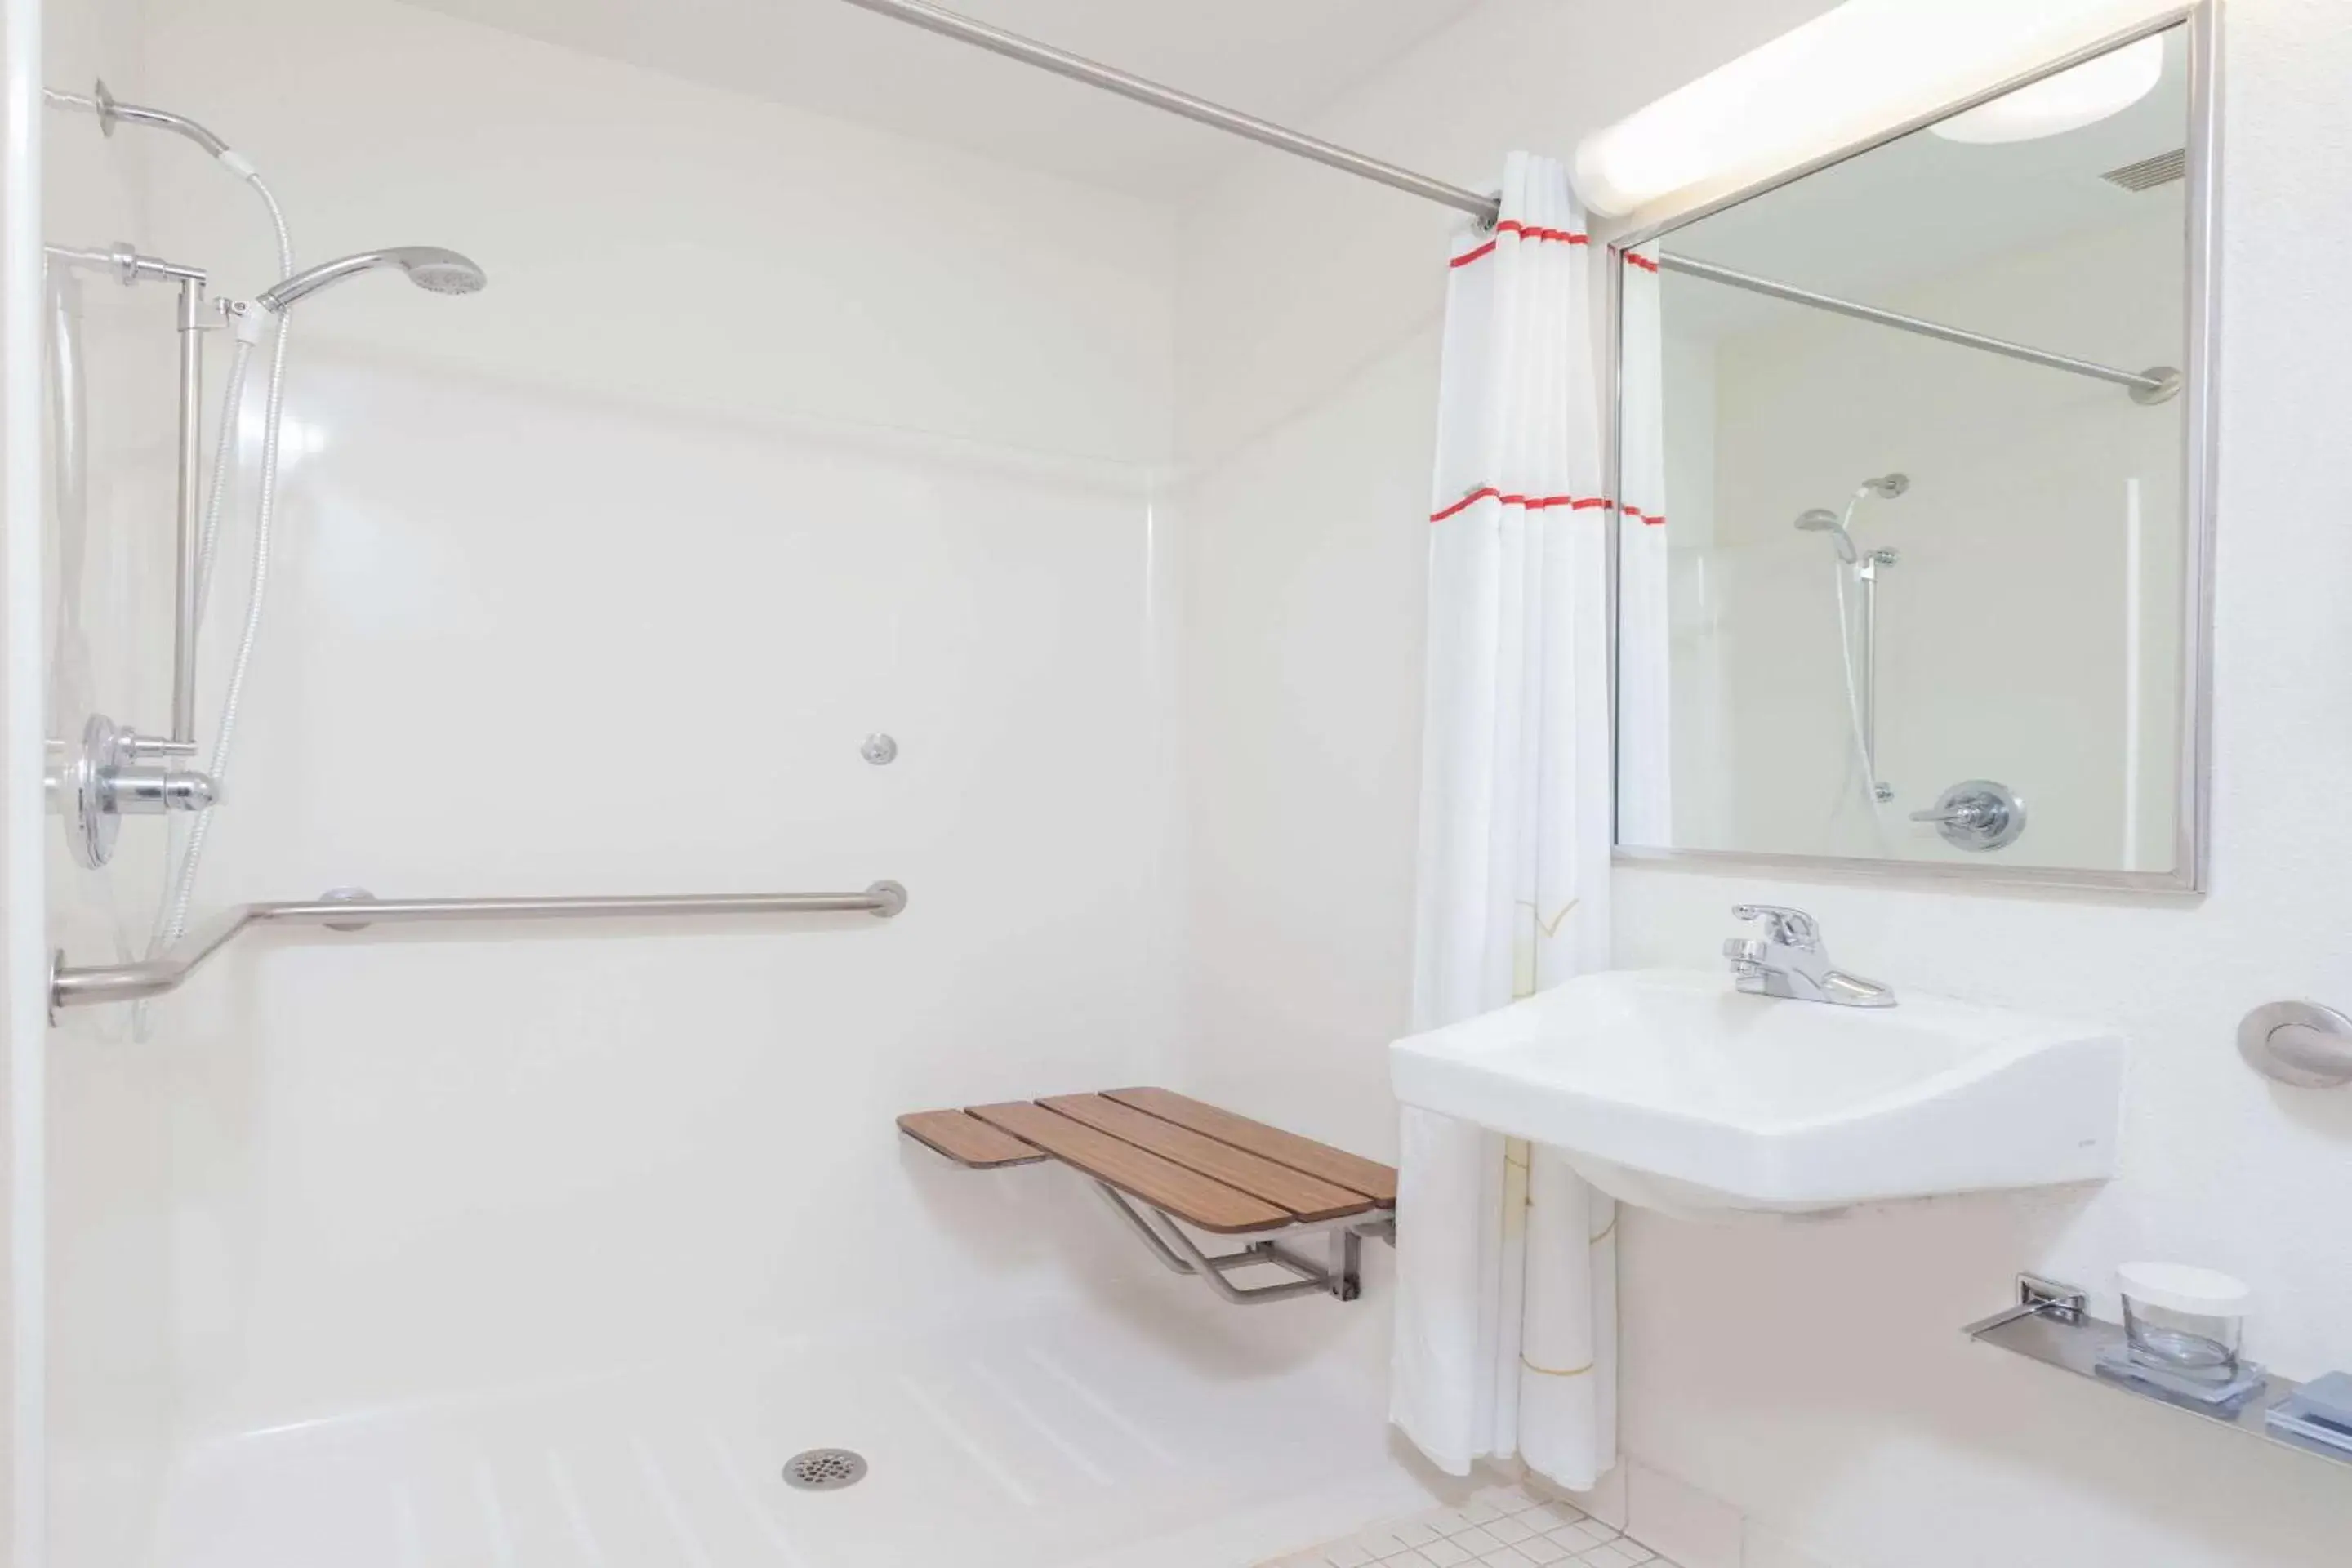 Bathroom in MainStay Suites Orlando Altamonte Springs